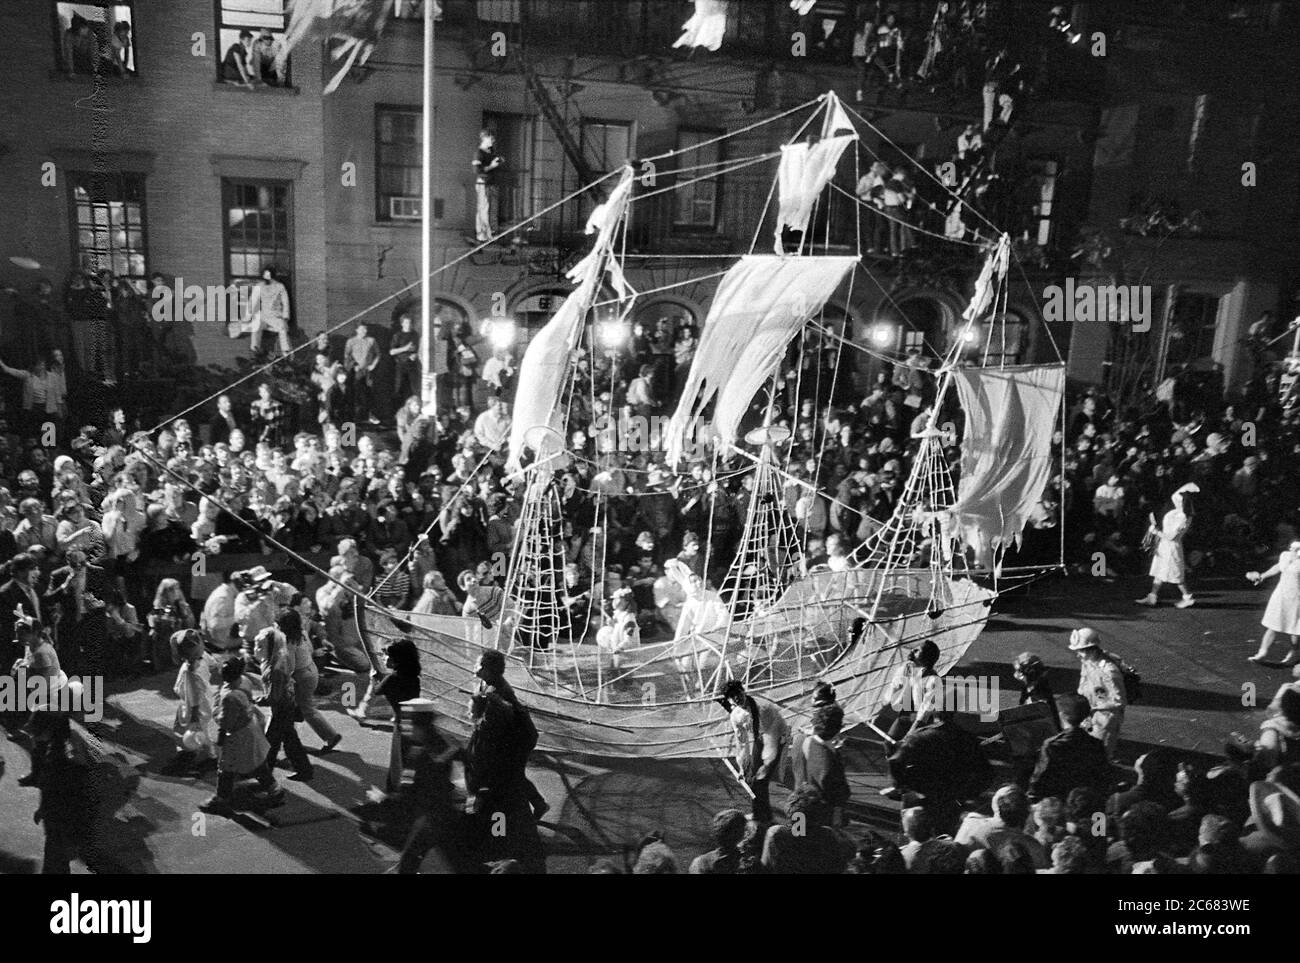 La barca fantasma galleggia al Greenwich Village Halloween Parade, New York City, USA negli anni '80 fotografata con film in bianco e nero di notte. Foto Stock